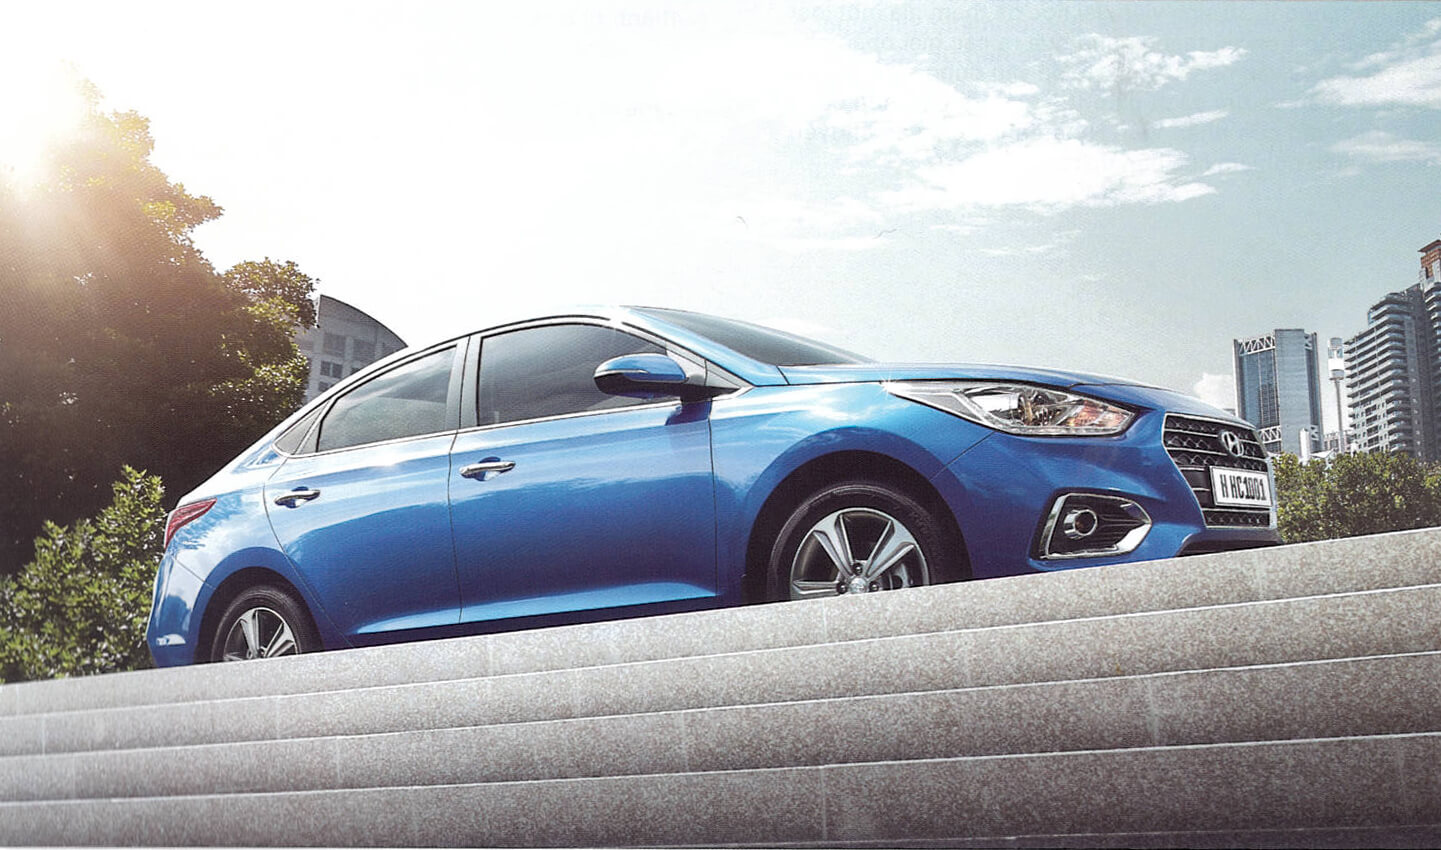 Tải ảnh xe Hyundai Accent cực chi tiết 38